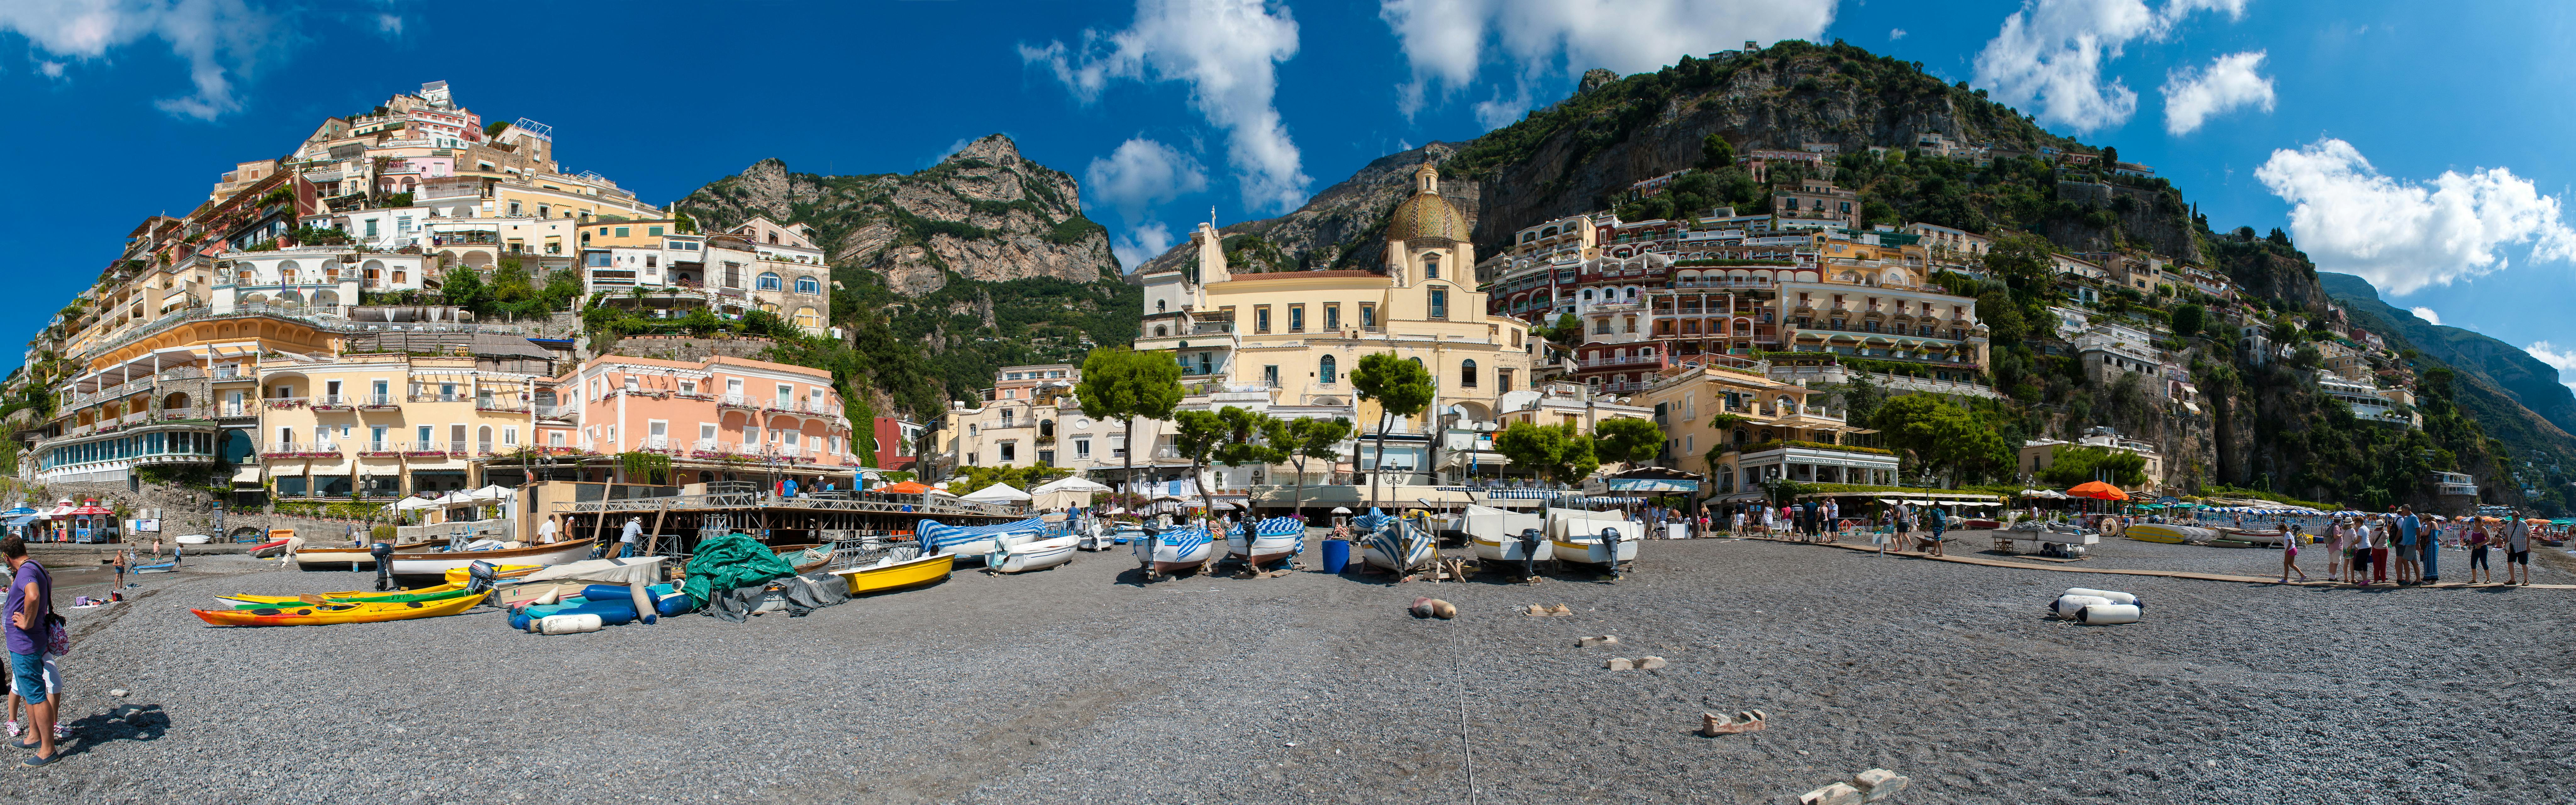 Amalfi Coast shore excursion